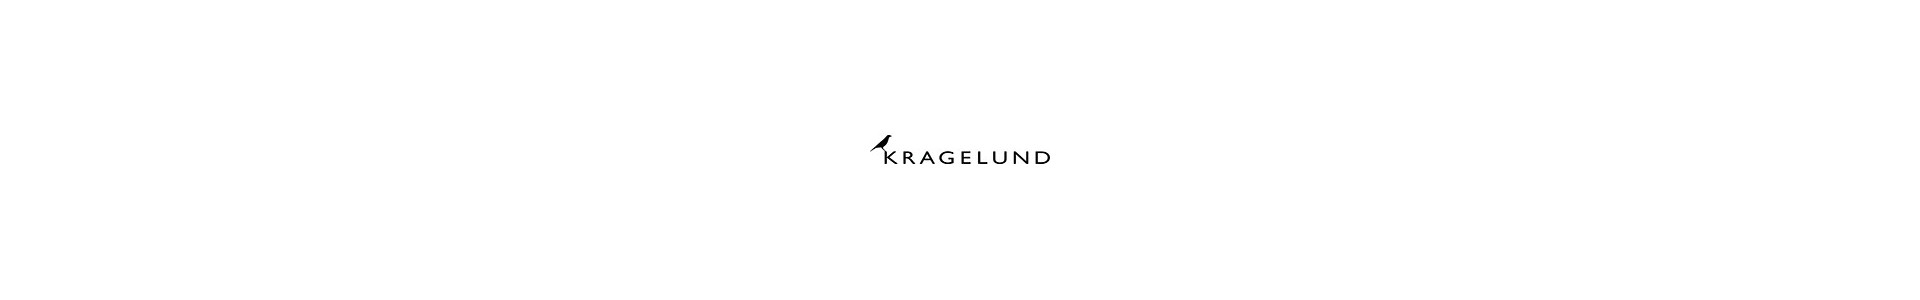 Kragelund fabricante de muebles tapizdos. Diseño muebles nórdicos